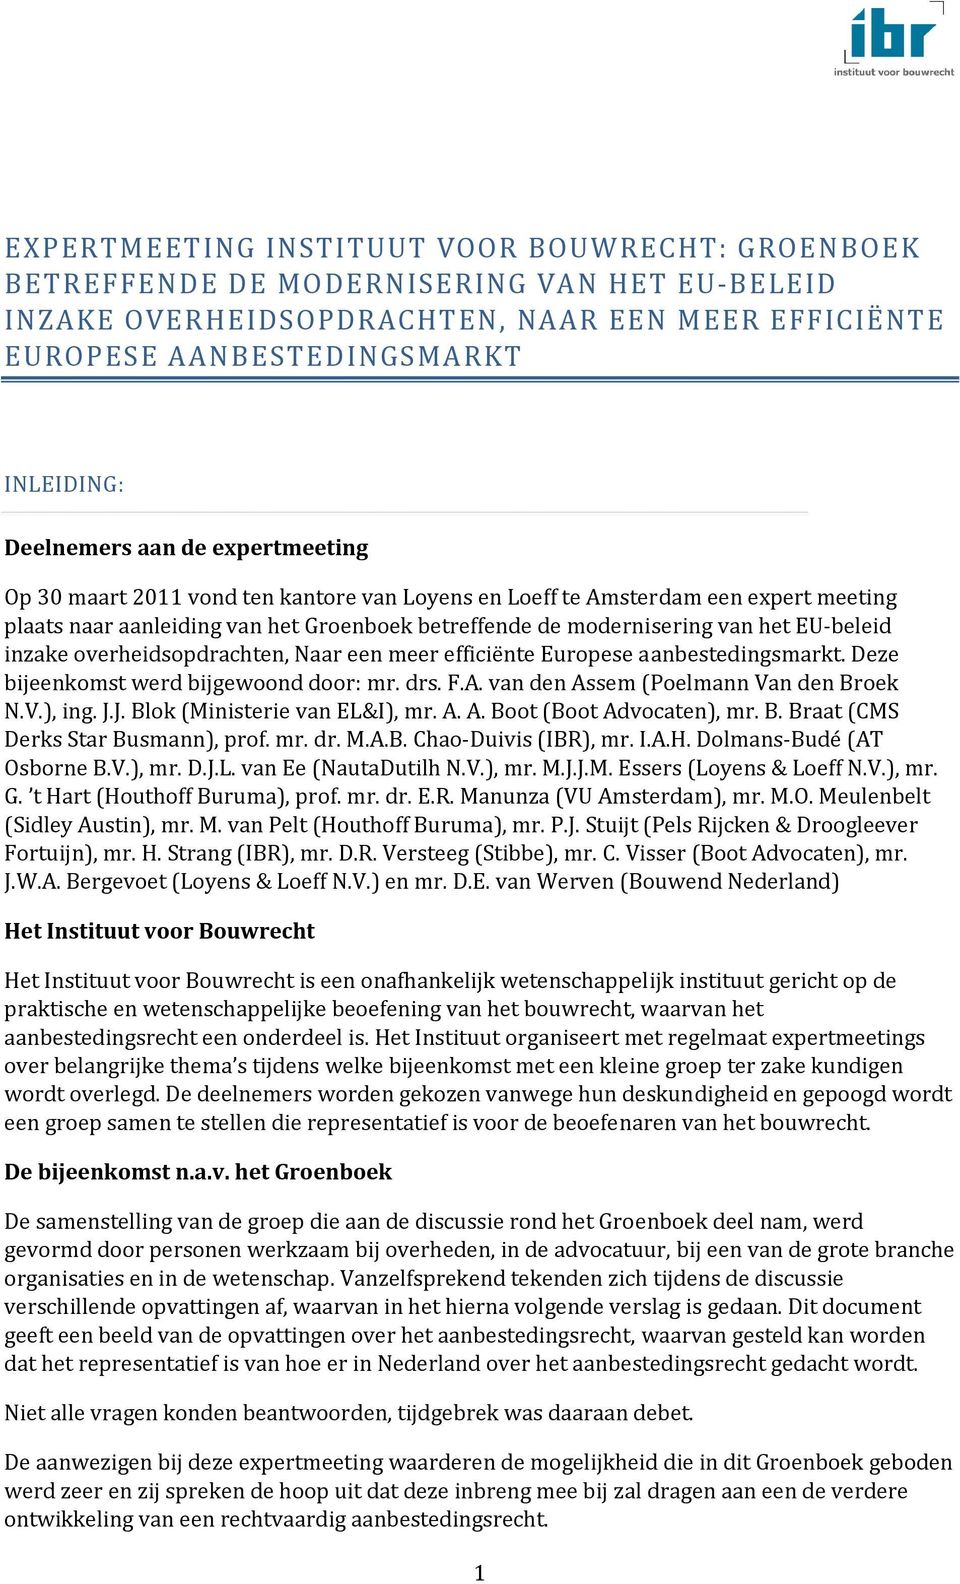 inzake overheidsopdrachten, Naar een meer efficiënte Europese aanbestedingsmarkt. Deze bijeenkomst werd bijgewoond door: mr. drs. F.A. van den Assem (Poelmann Van den Broek N.V.), ing. J.